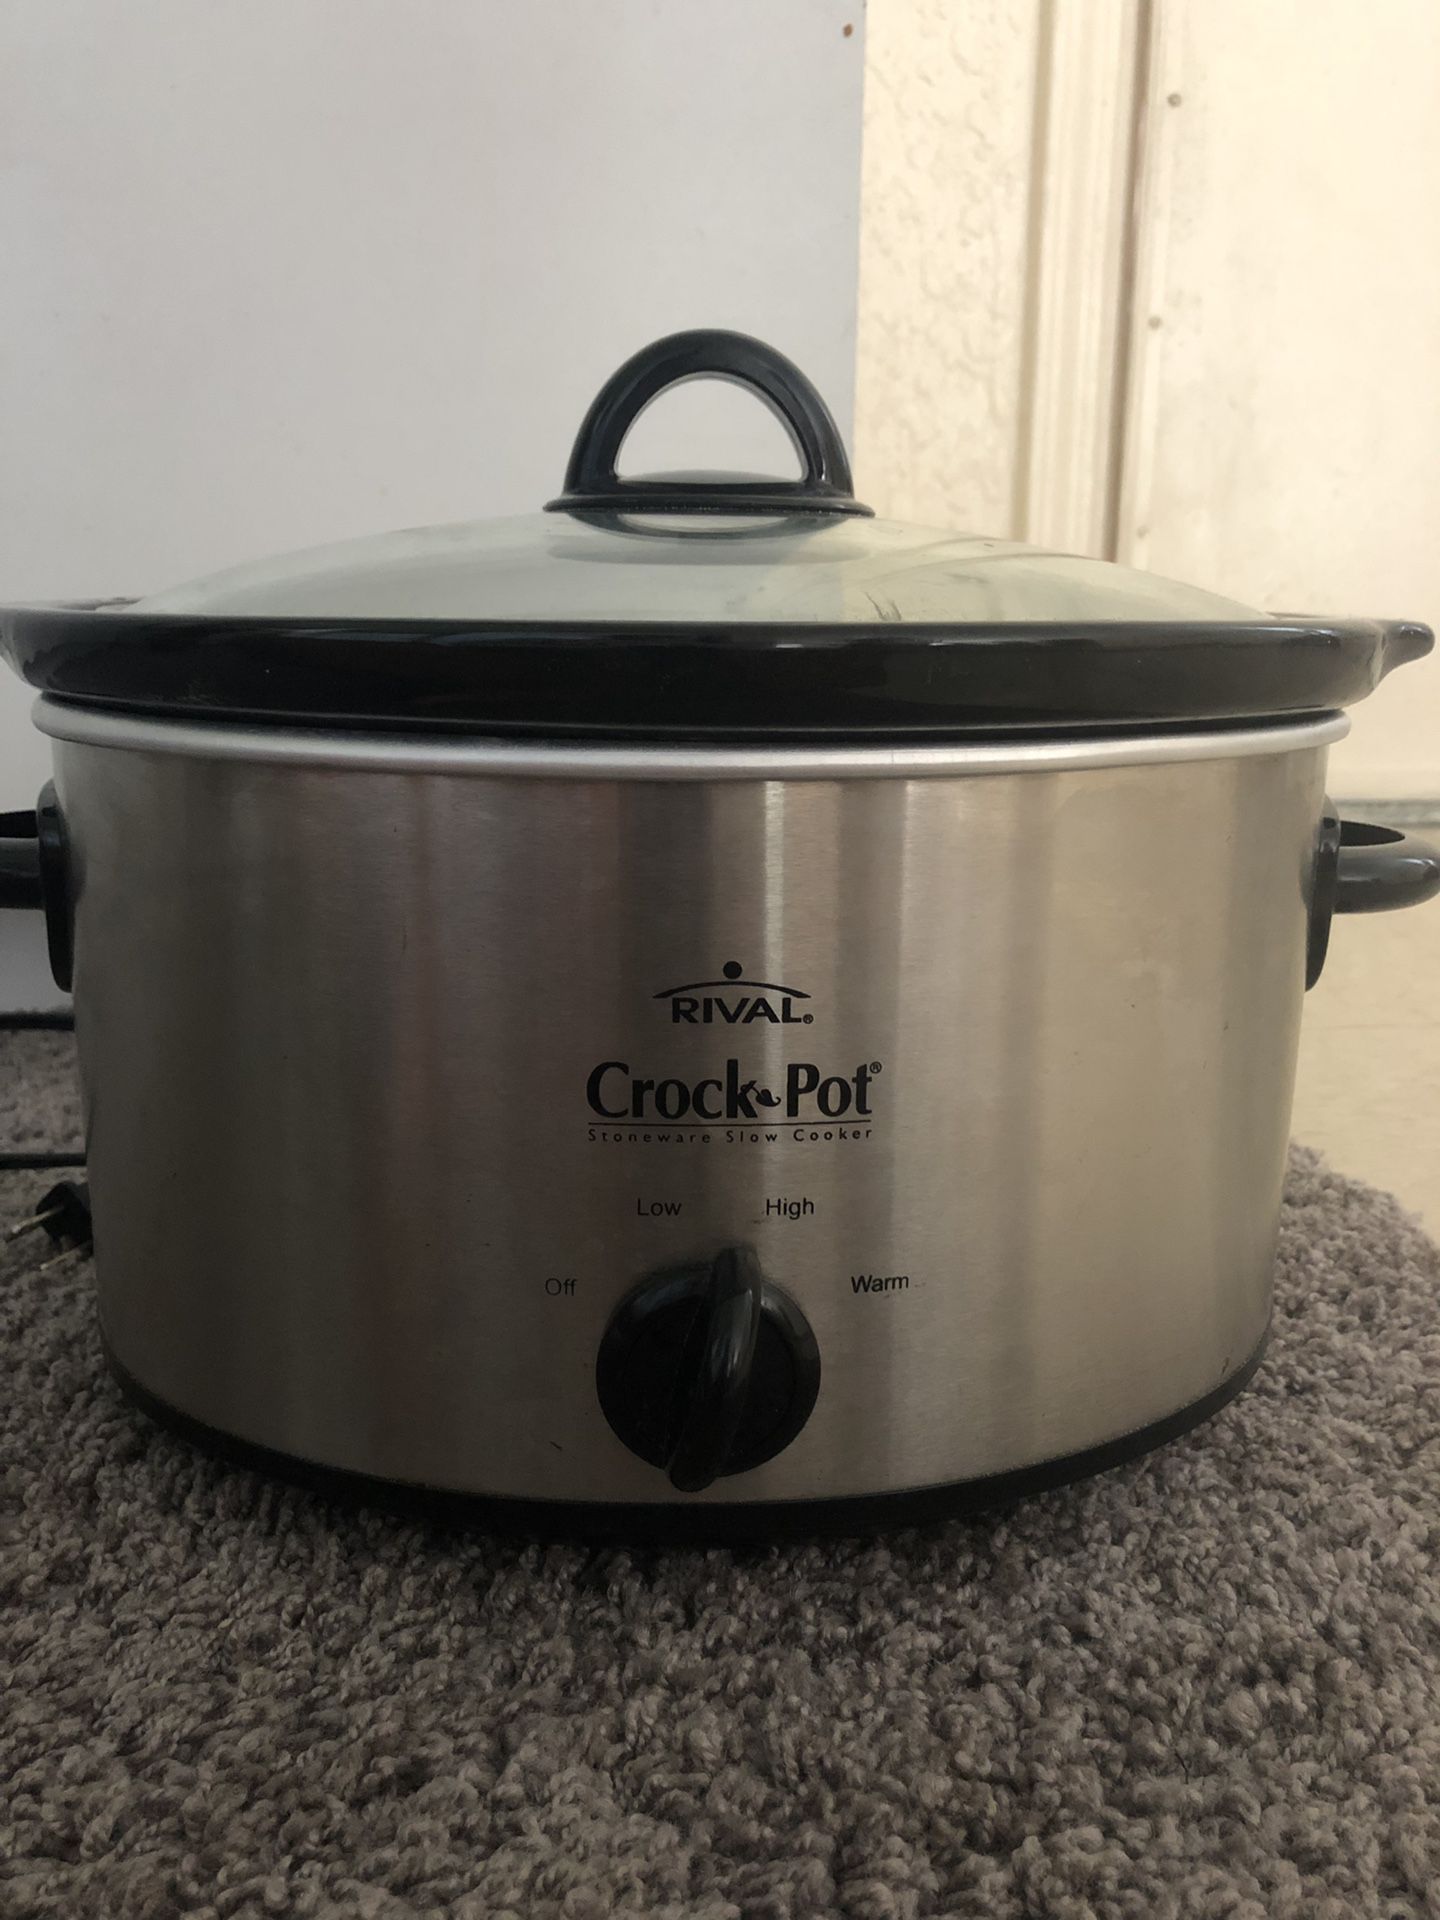 Crock-pot 7-Quart Manual Slow Cooker, Black